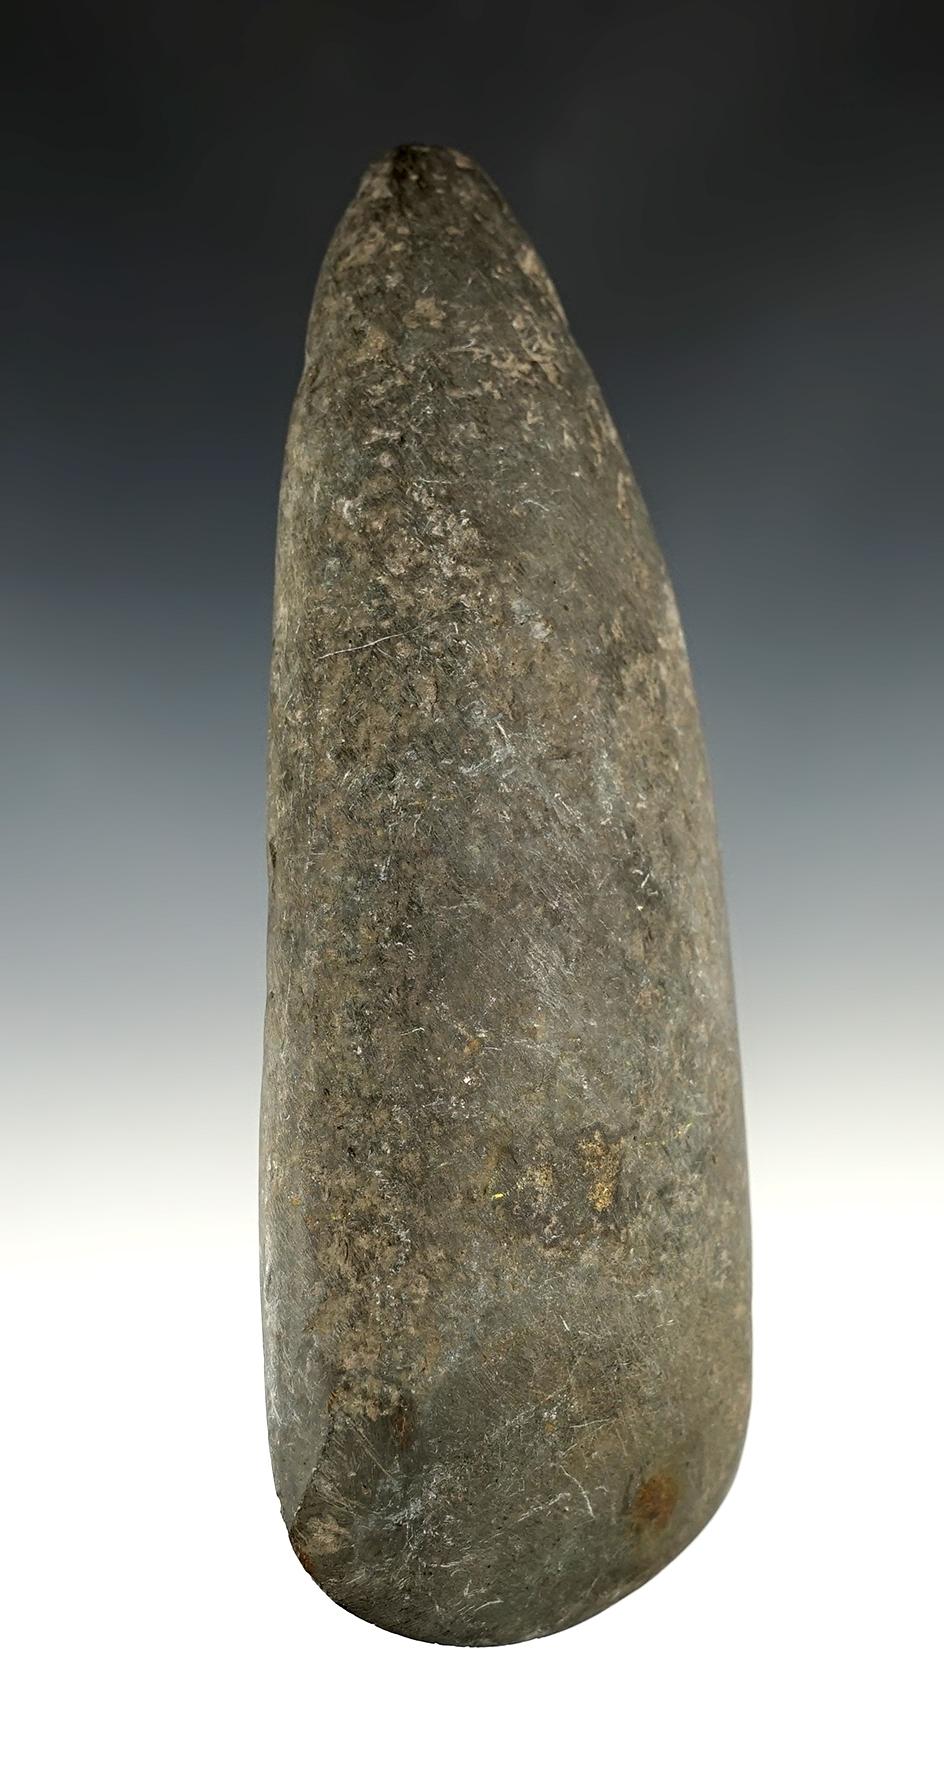 6" Hardstone Celt with sharp bit found in Lorain Co., Ohio. Ex. Vietzen Museum.